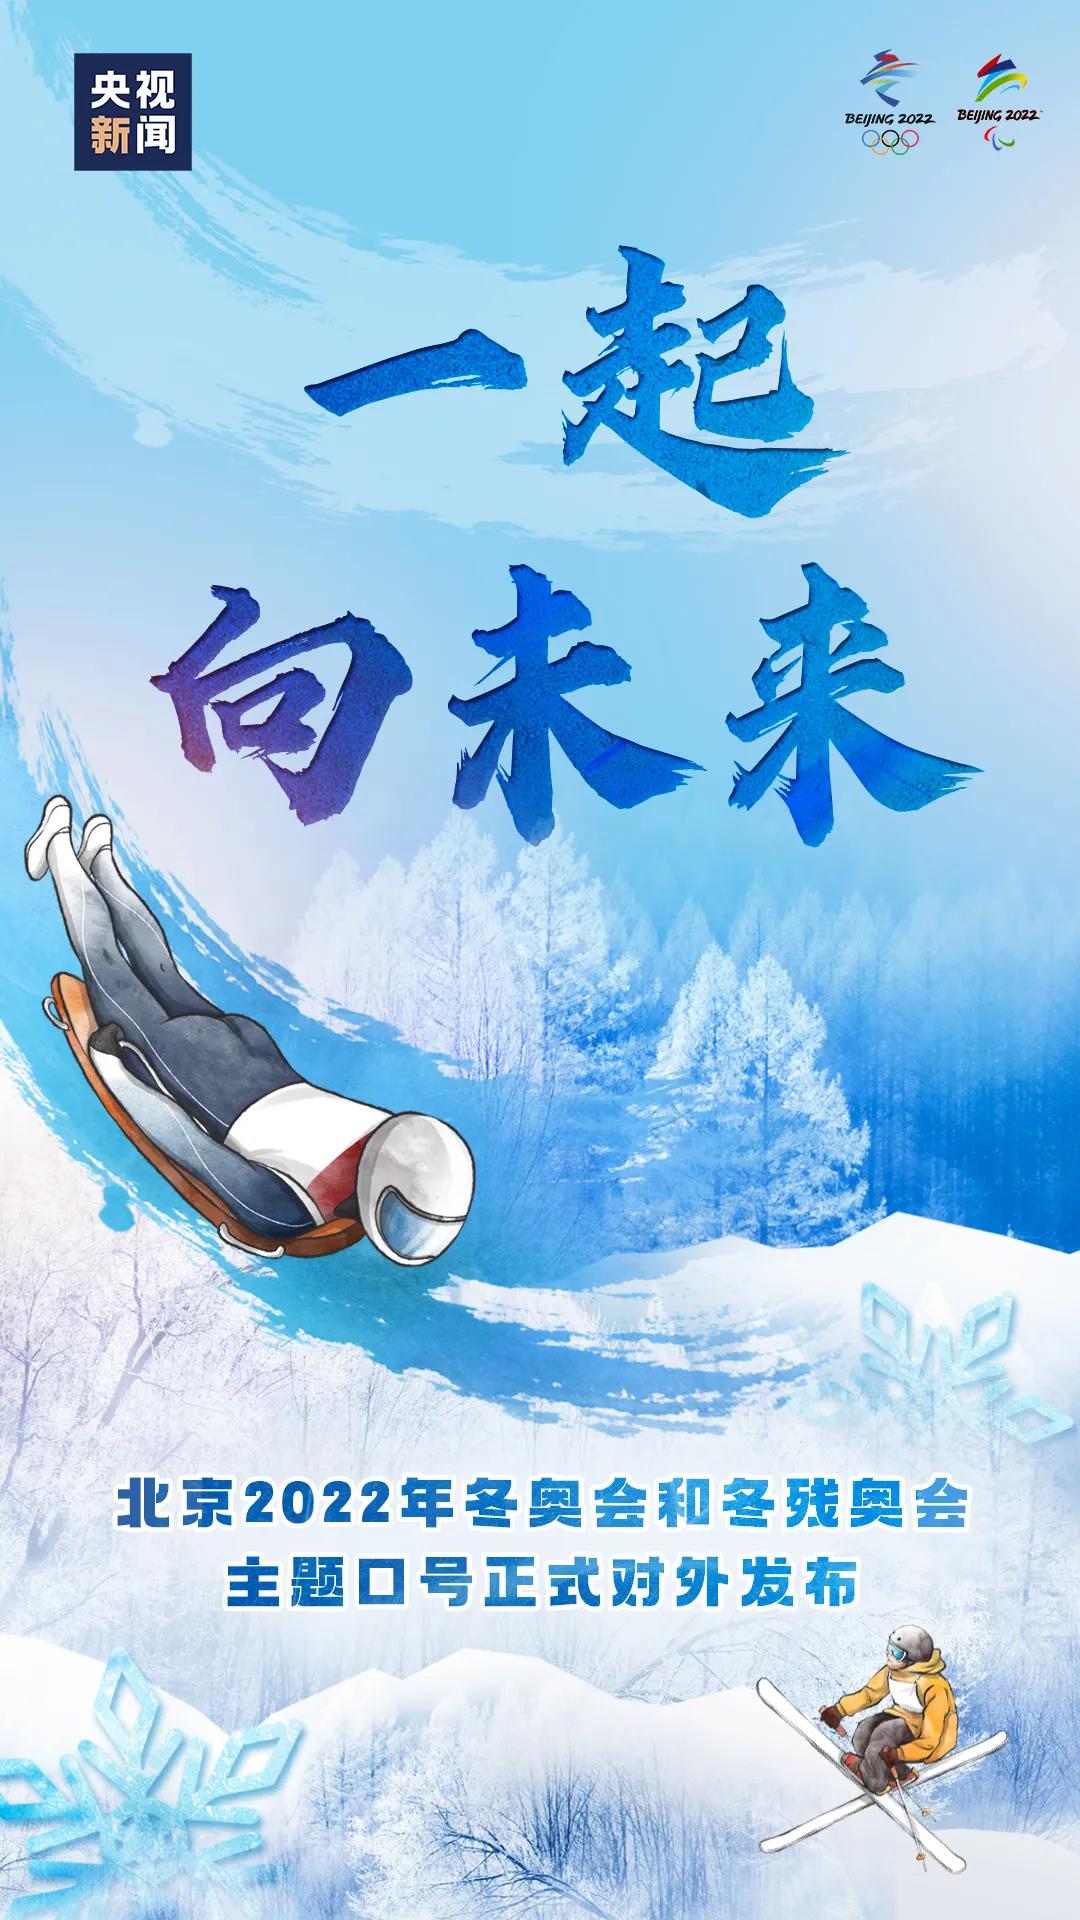 一起向未来北京2022年冬奥会和冬残奥会主题口号发布